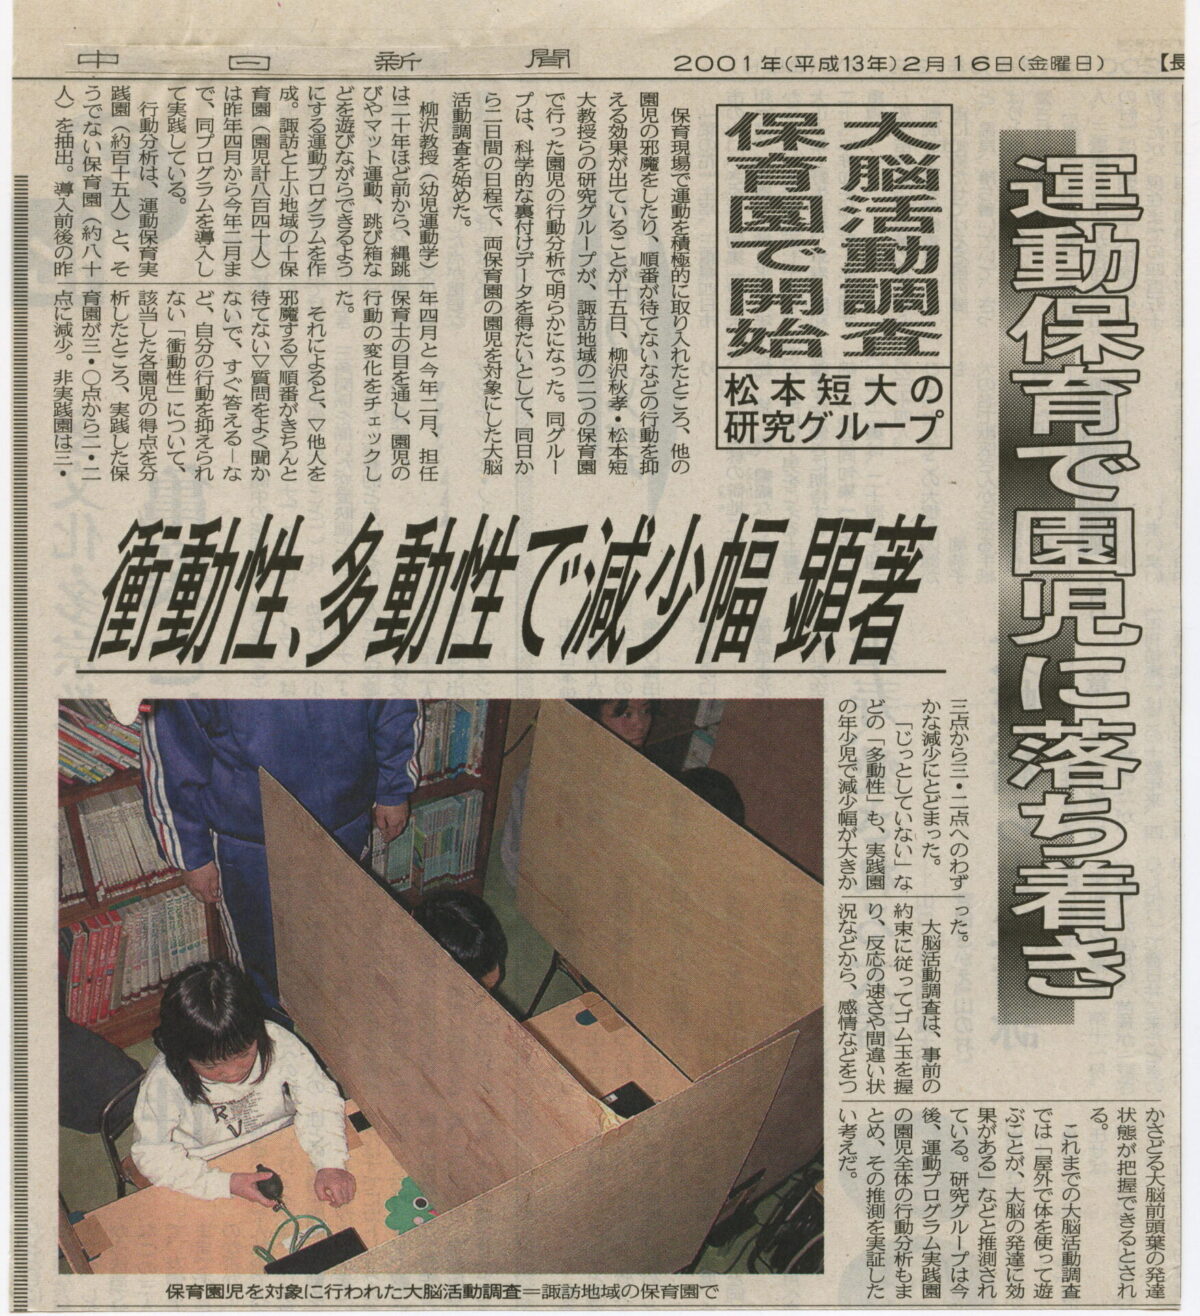 2001-02-16中日新聞